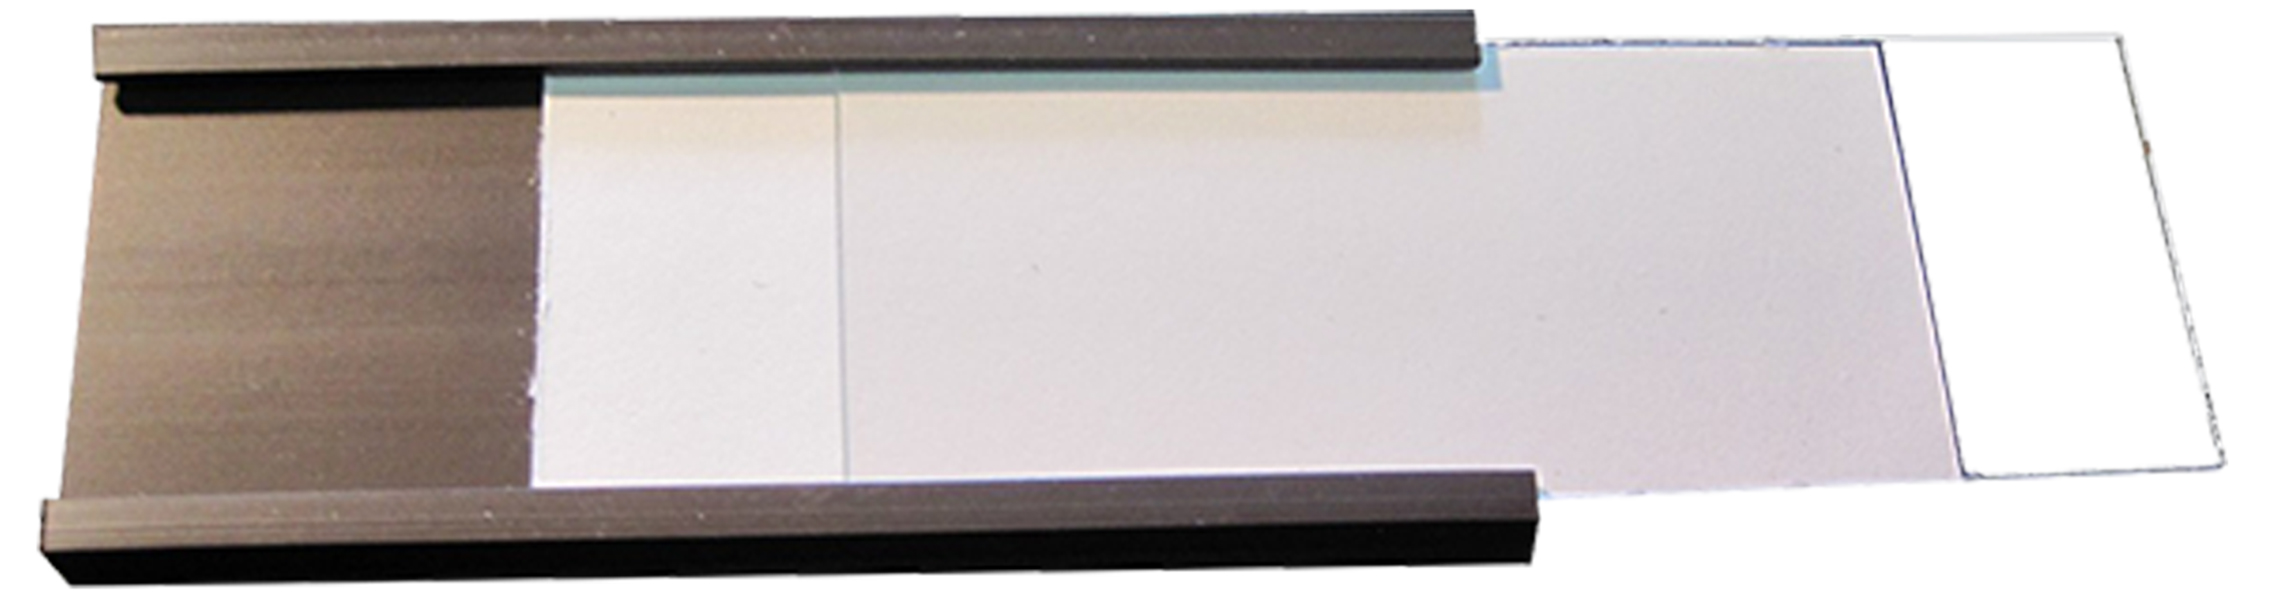 Cinta magnética perfil C. Porta etiquetas magnético para estanterías. Perfil en forma de C en ancho 10mm - 100 mm